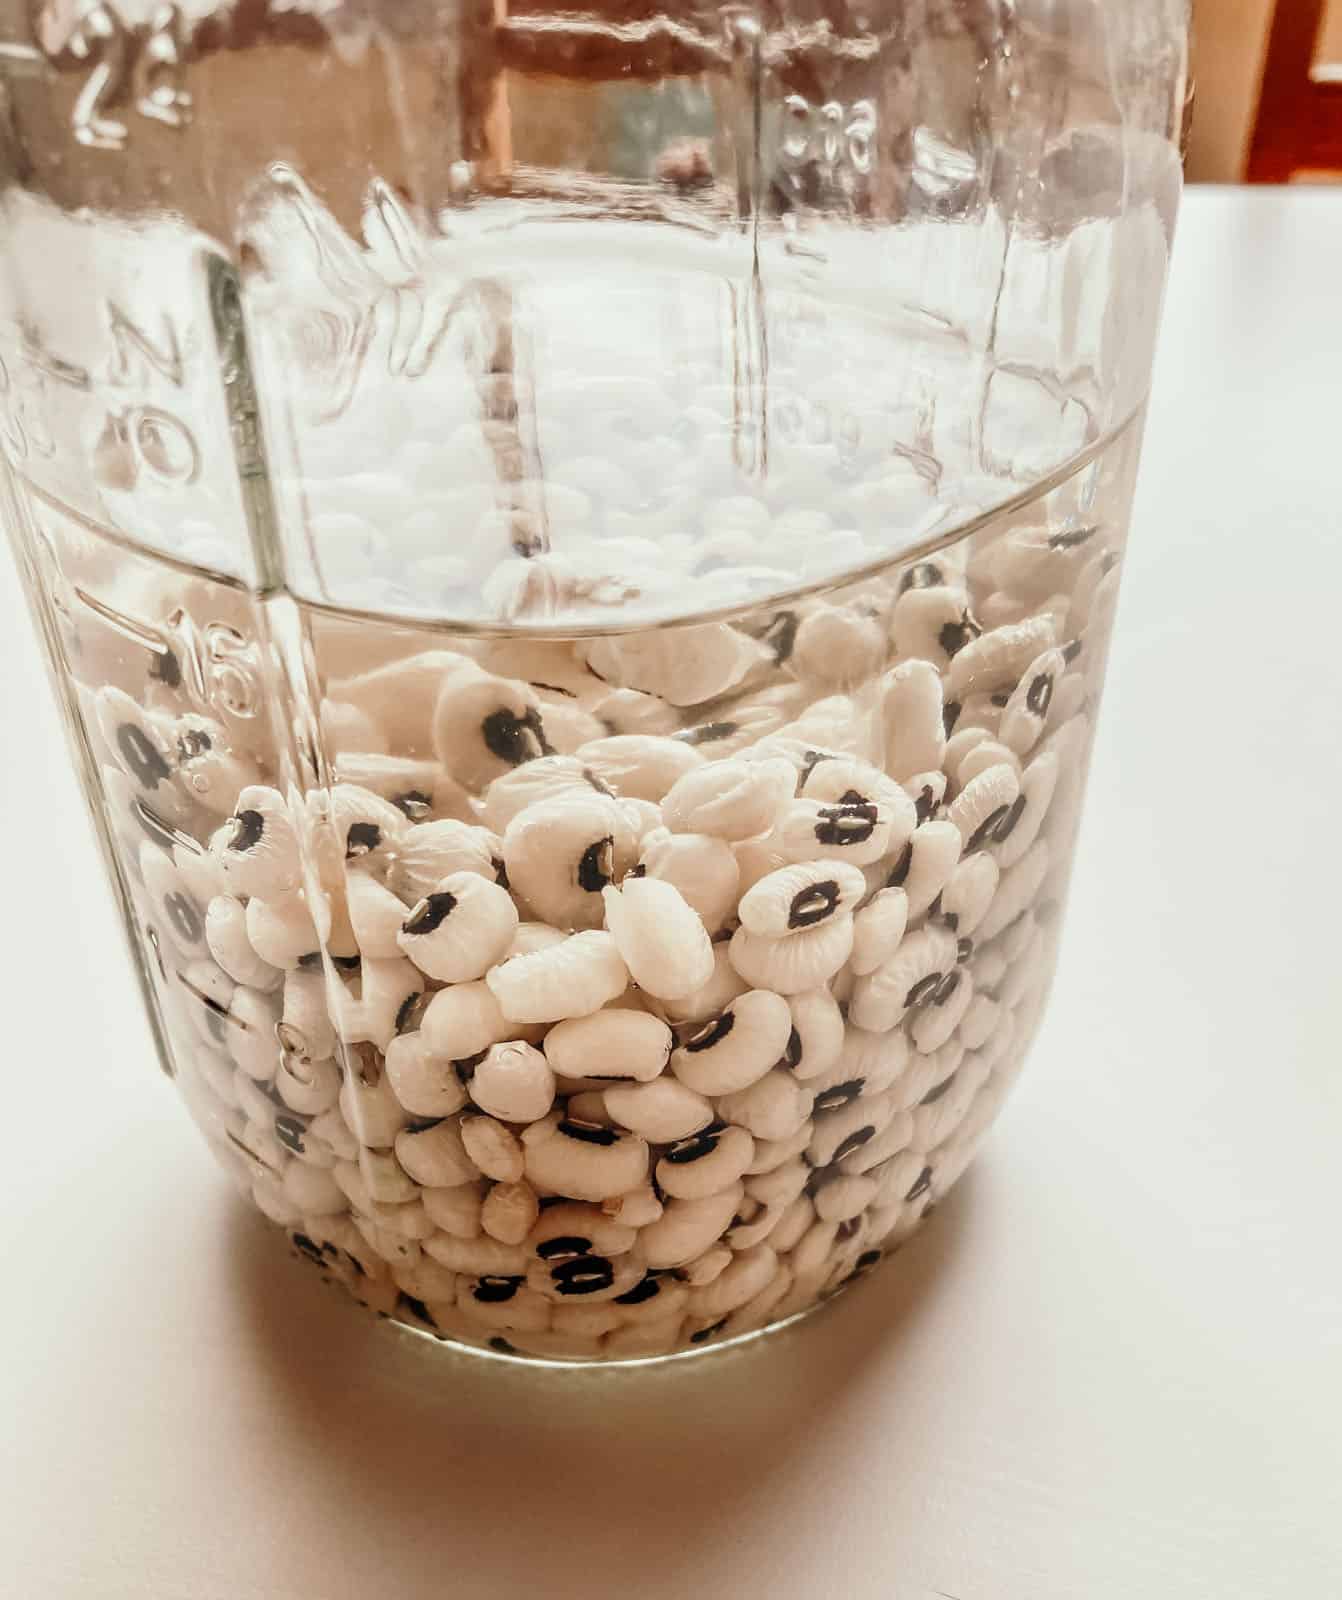 black-eyed peas soaking in a mason jar